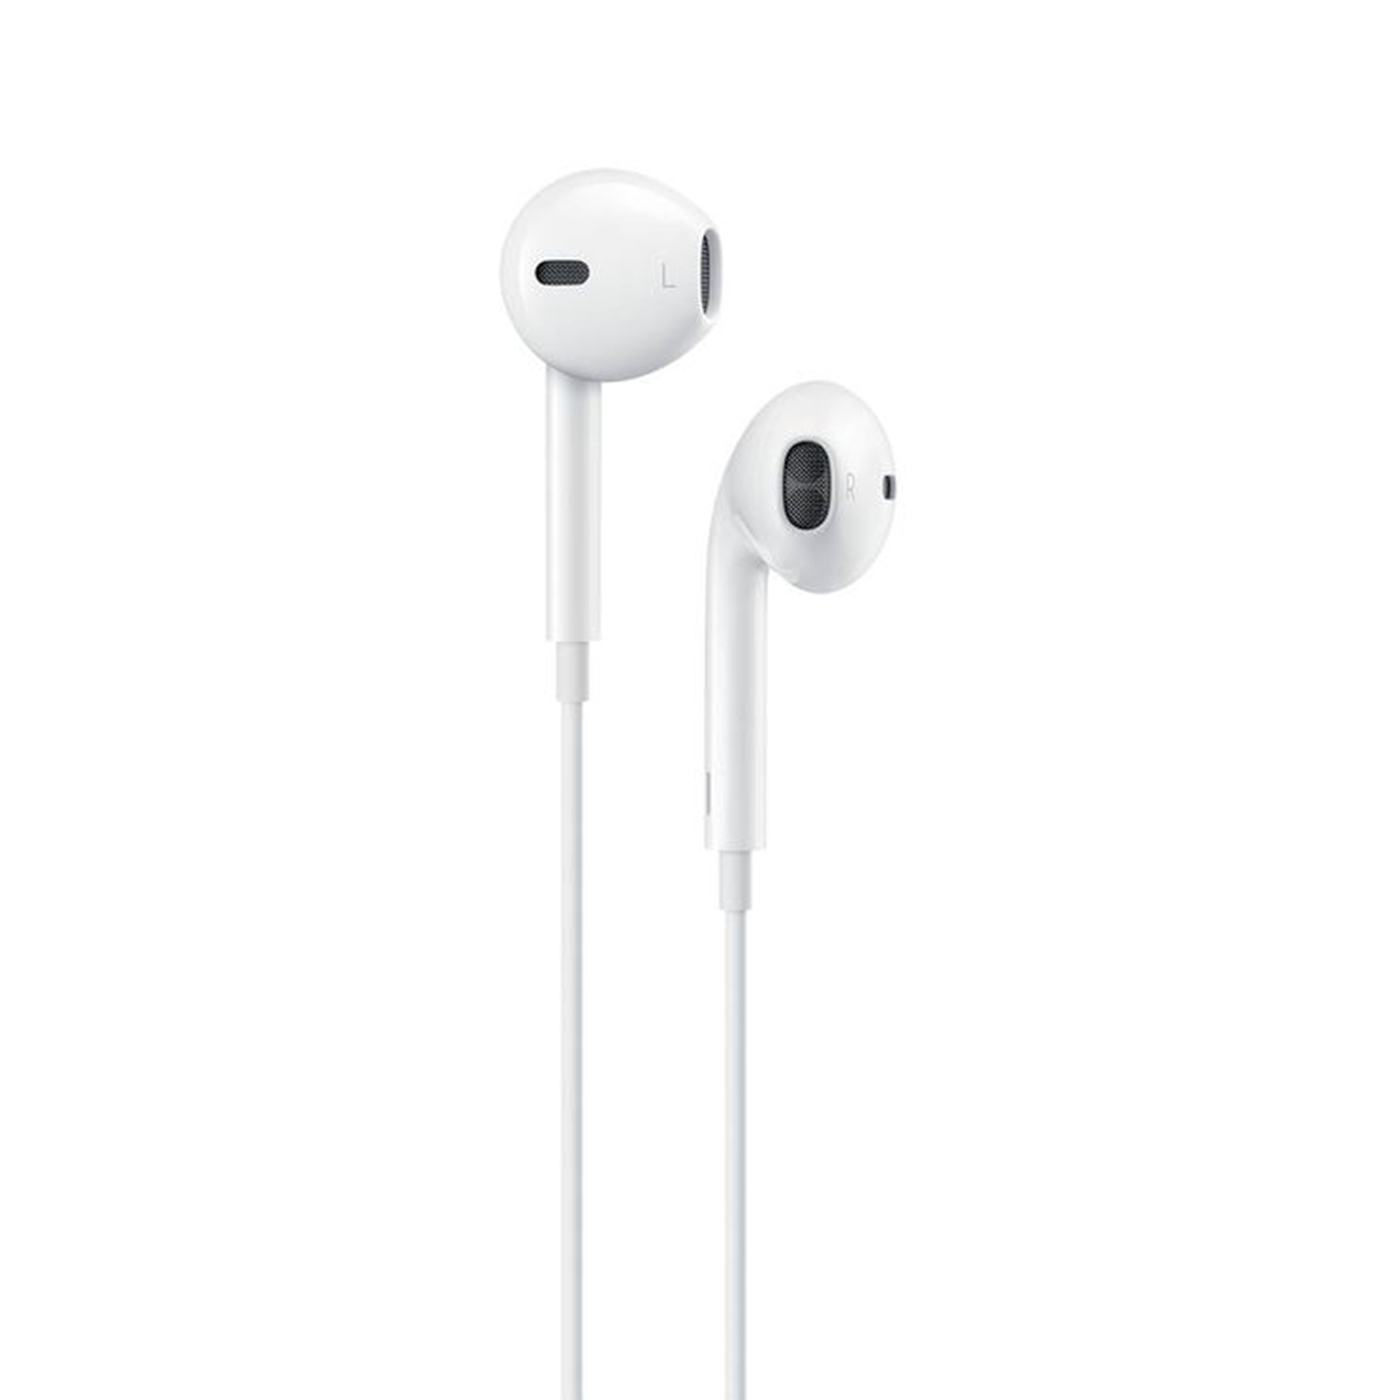 Apple promete una solución para el error de sus auriculares Lightning